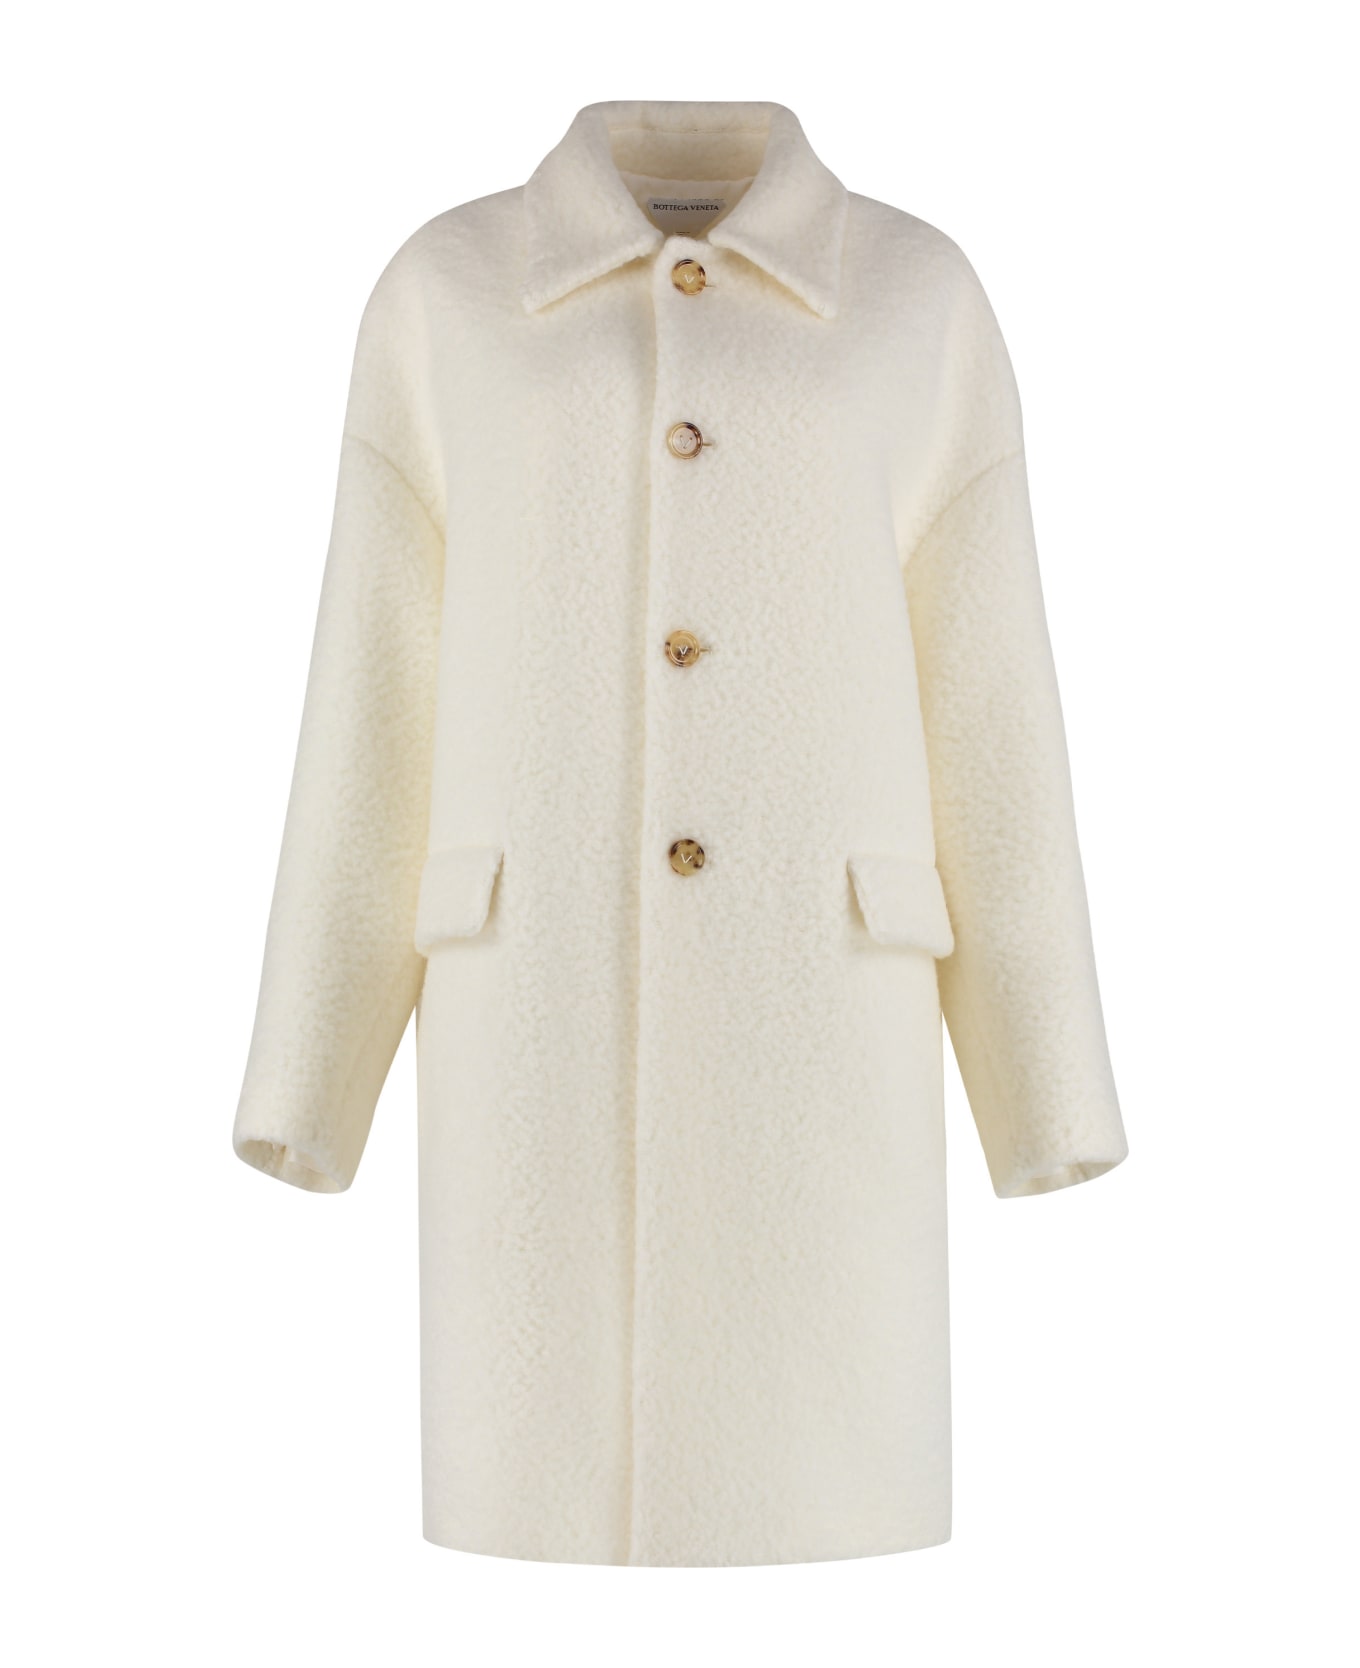 Bottega Veneta Wool Coat - White コート